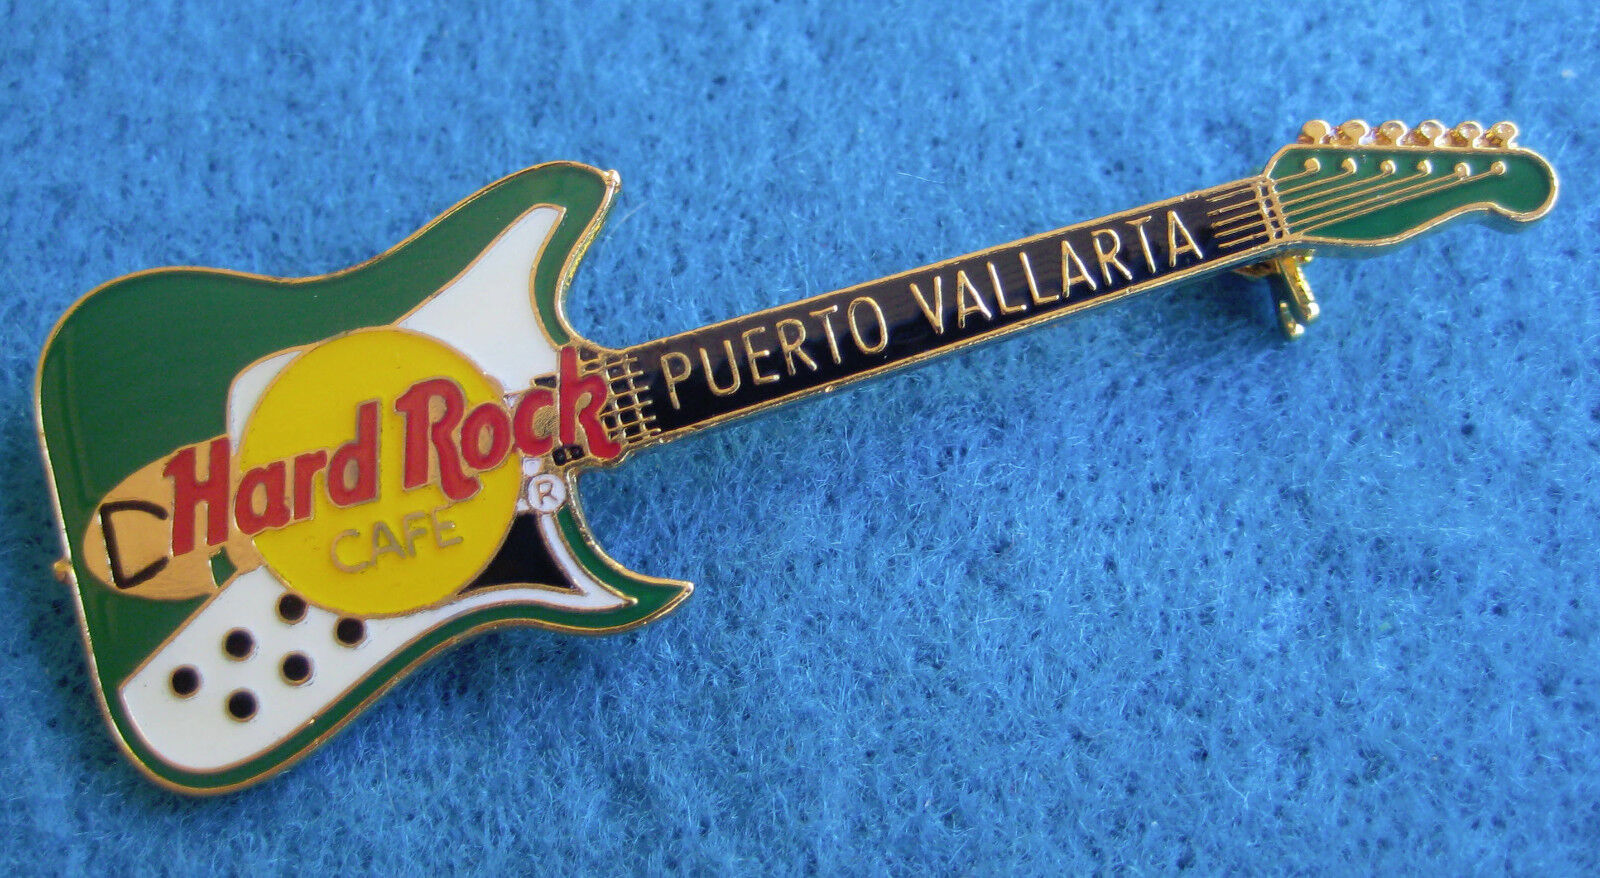 PUERTO VALLARTA MEXICO GREEN WHITE BURNS VIBRA-ARTISTE GUITAR Hard Rock Cafe PIN